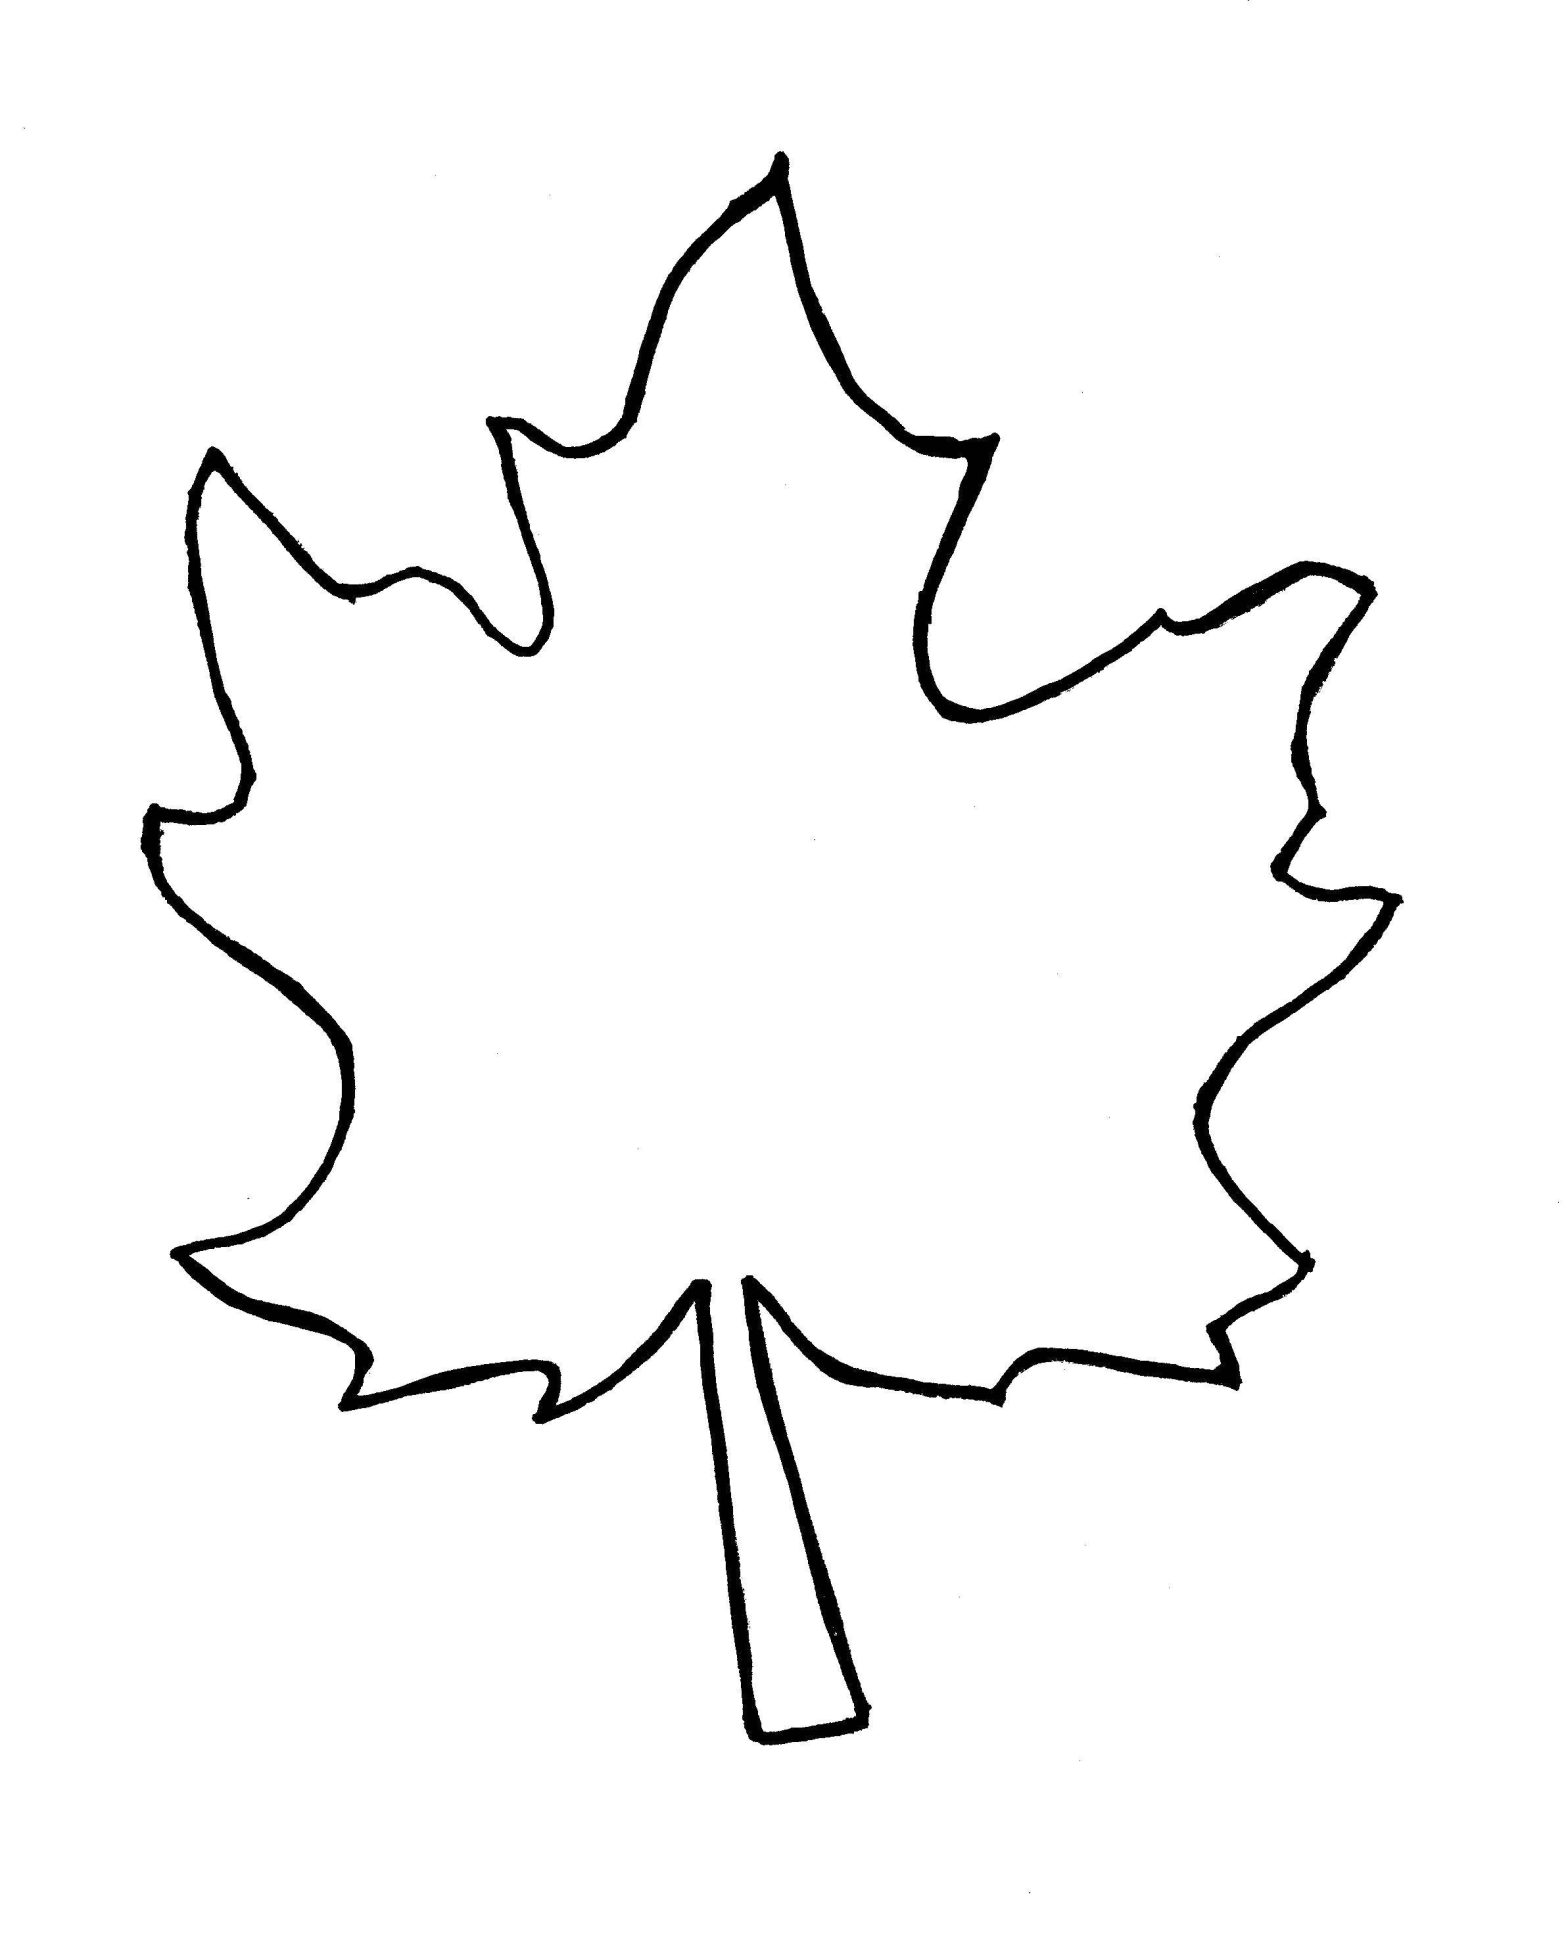 Раскраска листьев деревьев лист для детей (листья, лист)